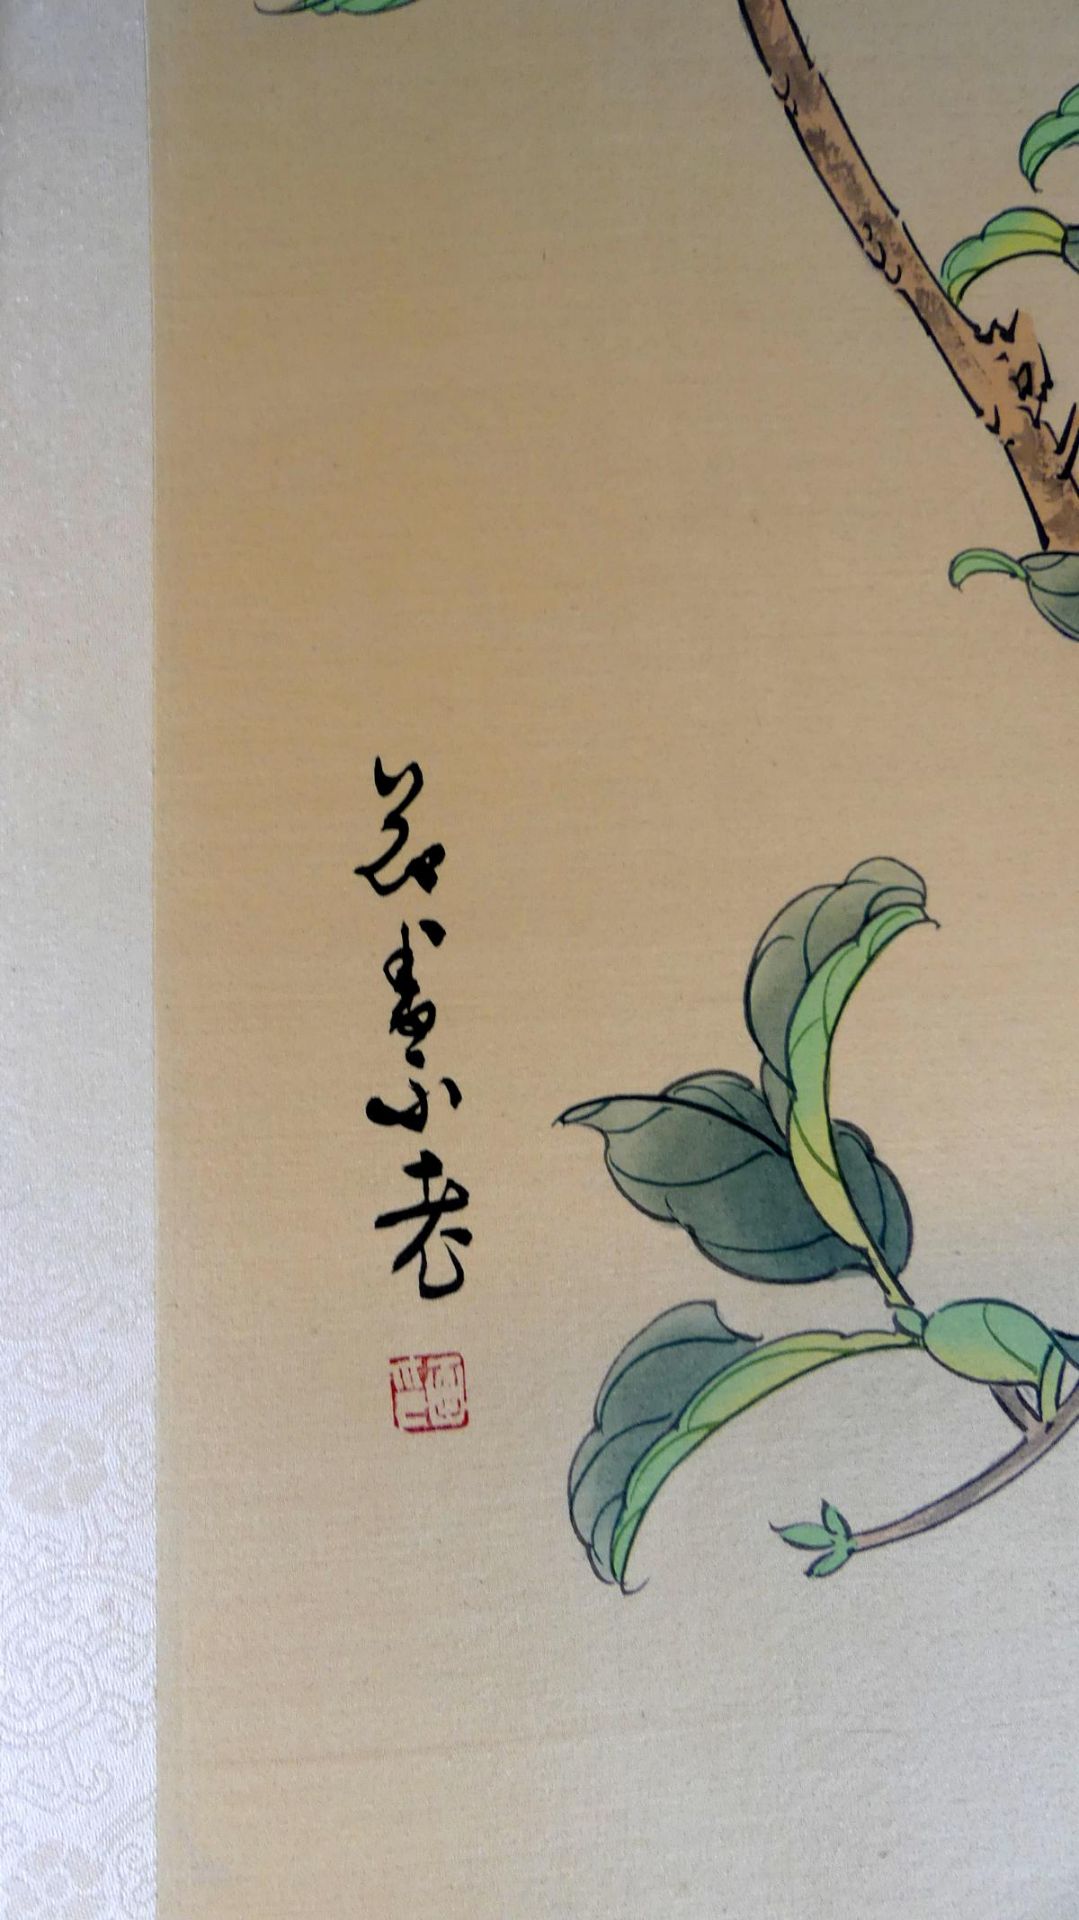 Konvolut von 5 asiatischen Seidenbildern, Aquarell/Papier, Blumen mit - Image 3 of 3